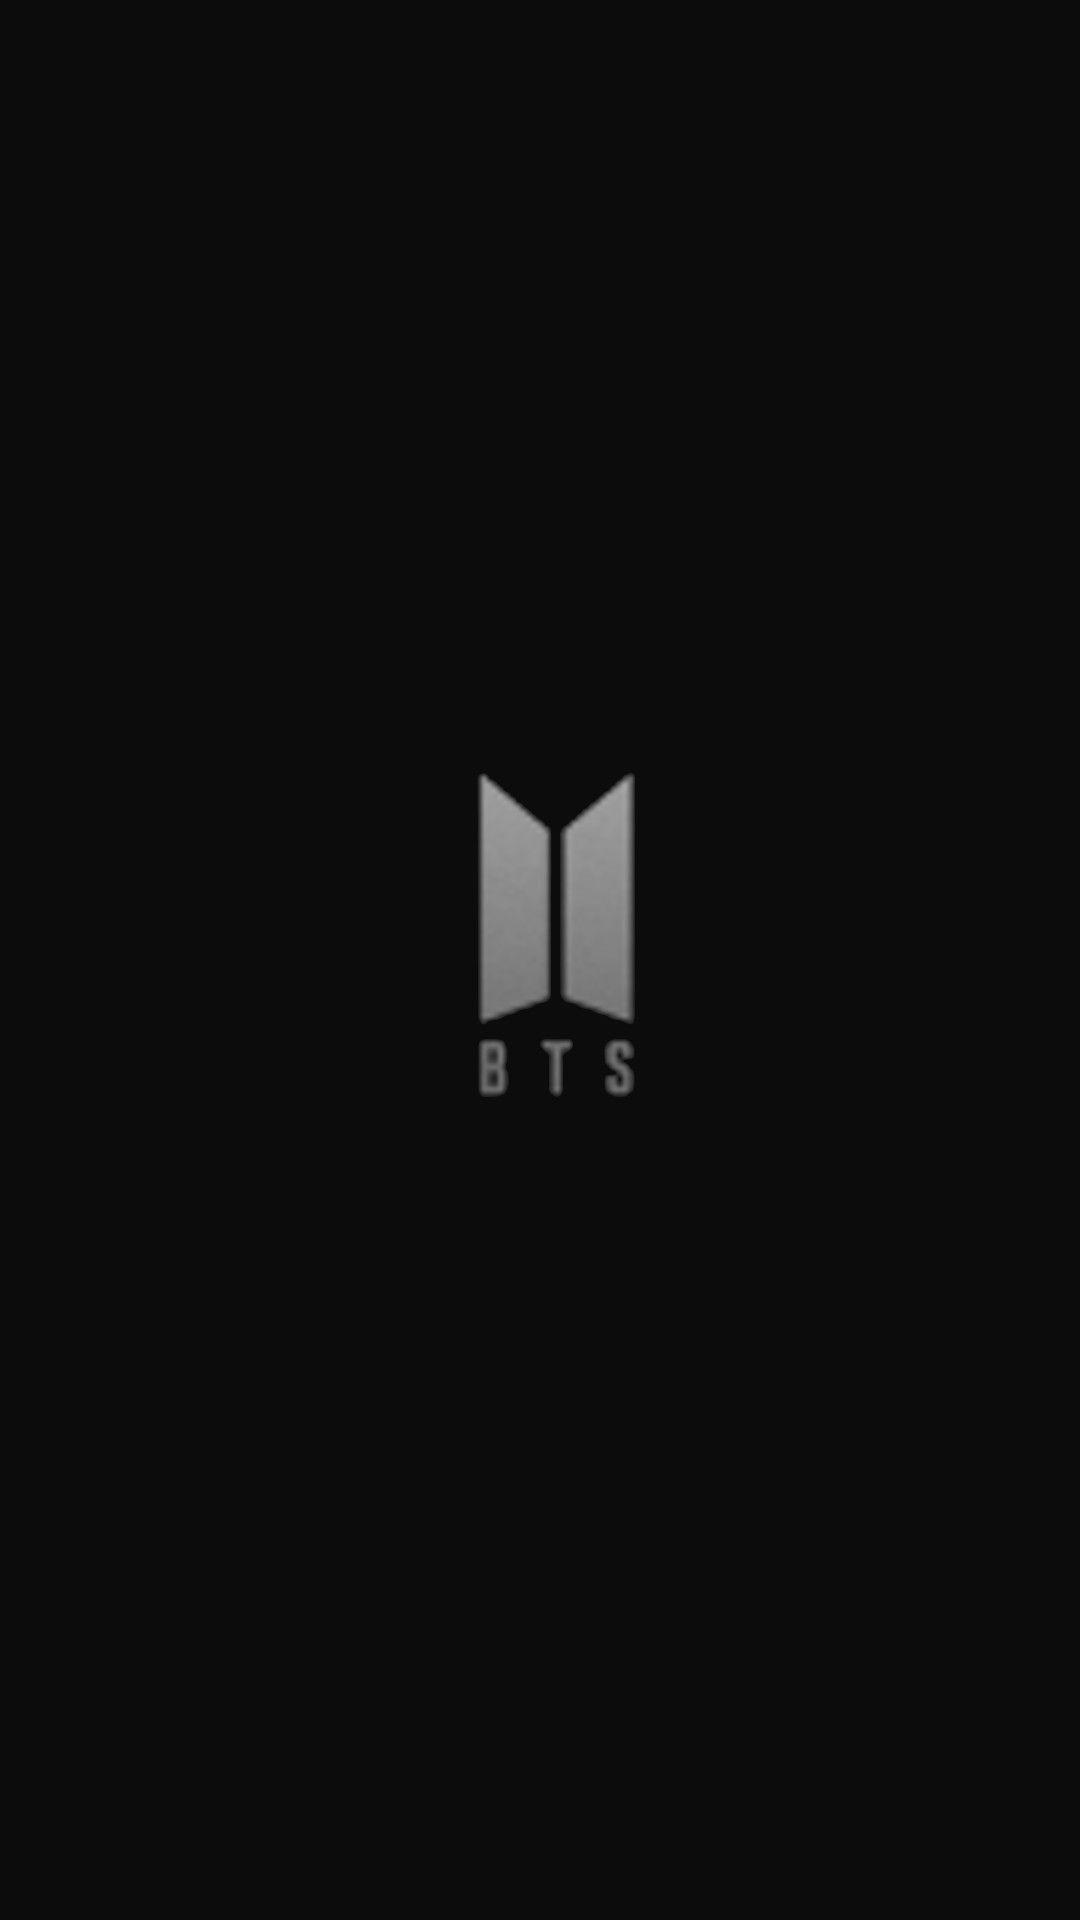 BTS Logo Wallpapers - Top Những Hình Ảnh Đẹp